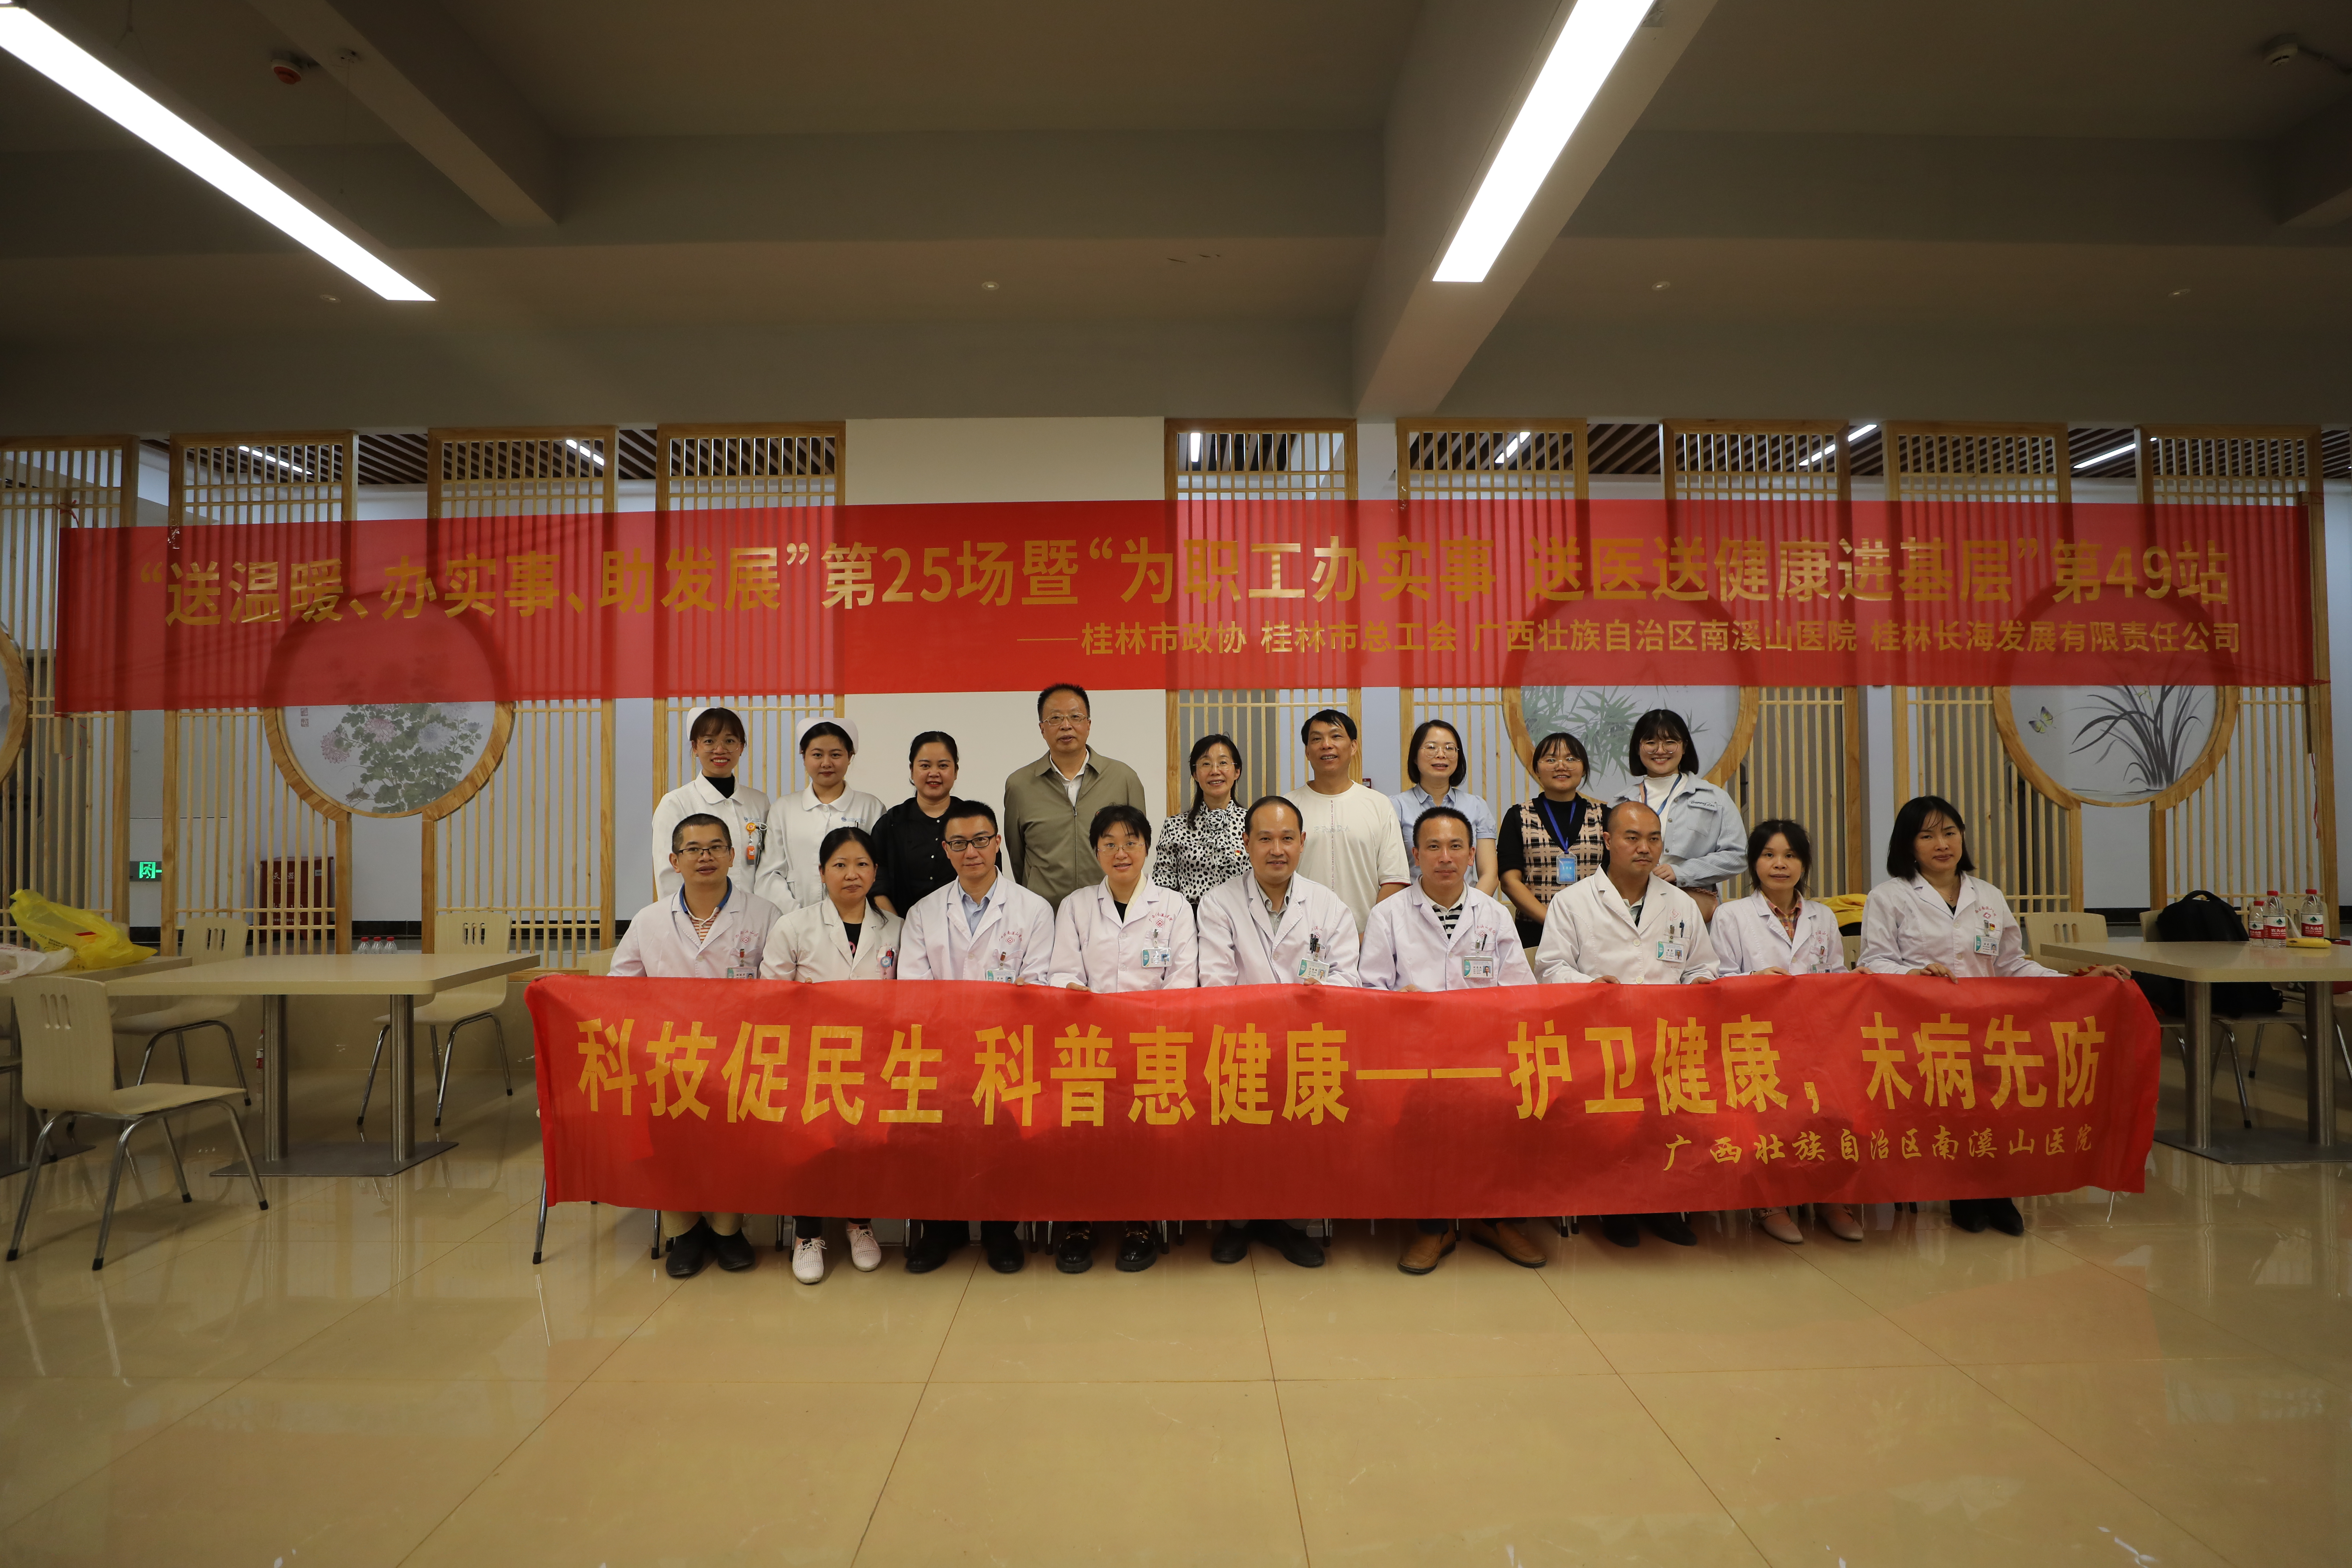 广西壮族自治区南溪山医院送健康进单位第 49 站走进桂林长海发展有限公司